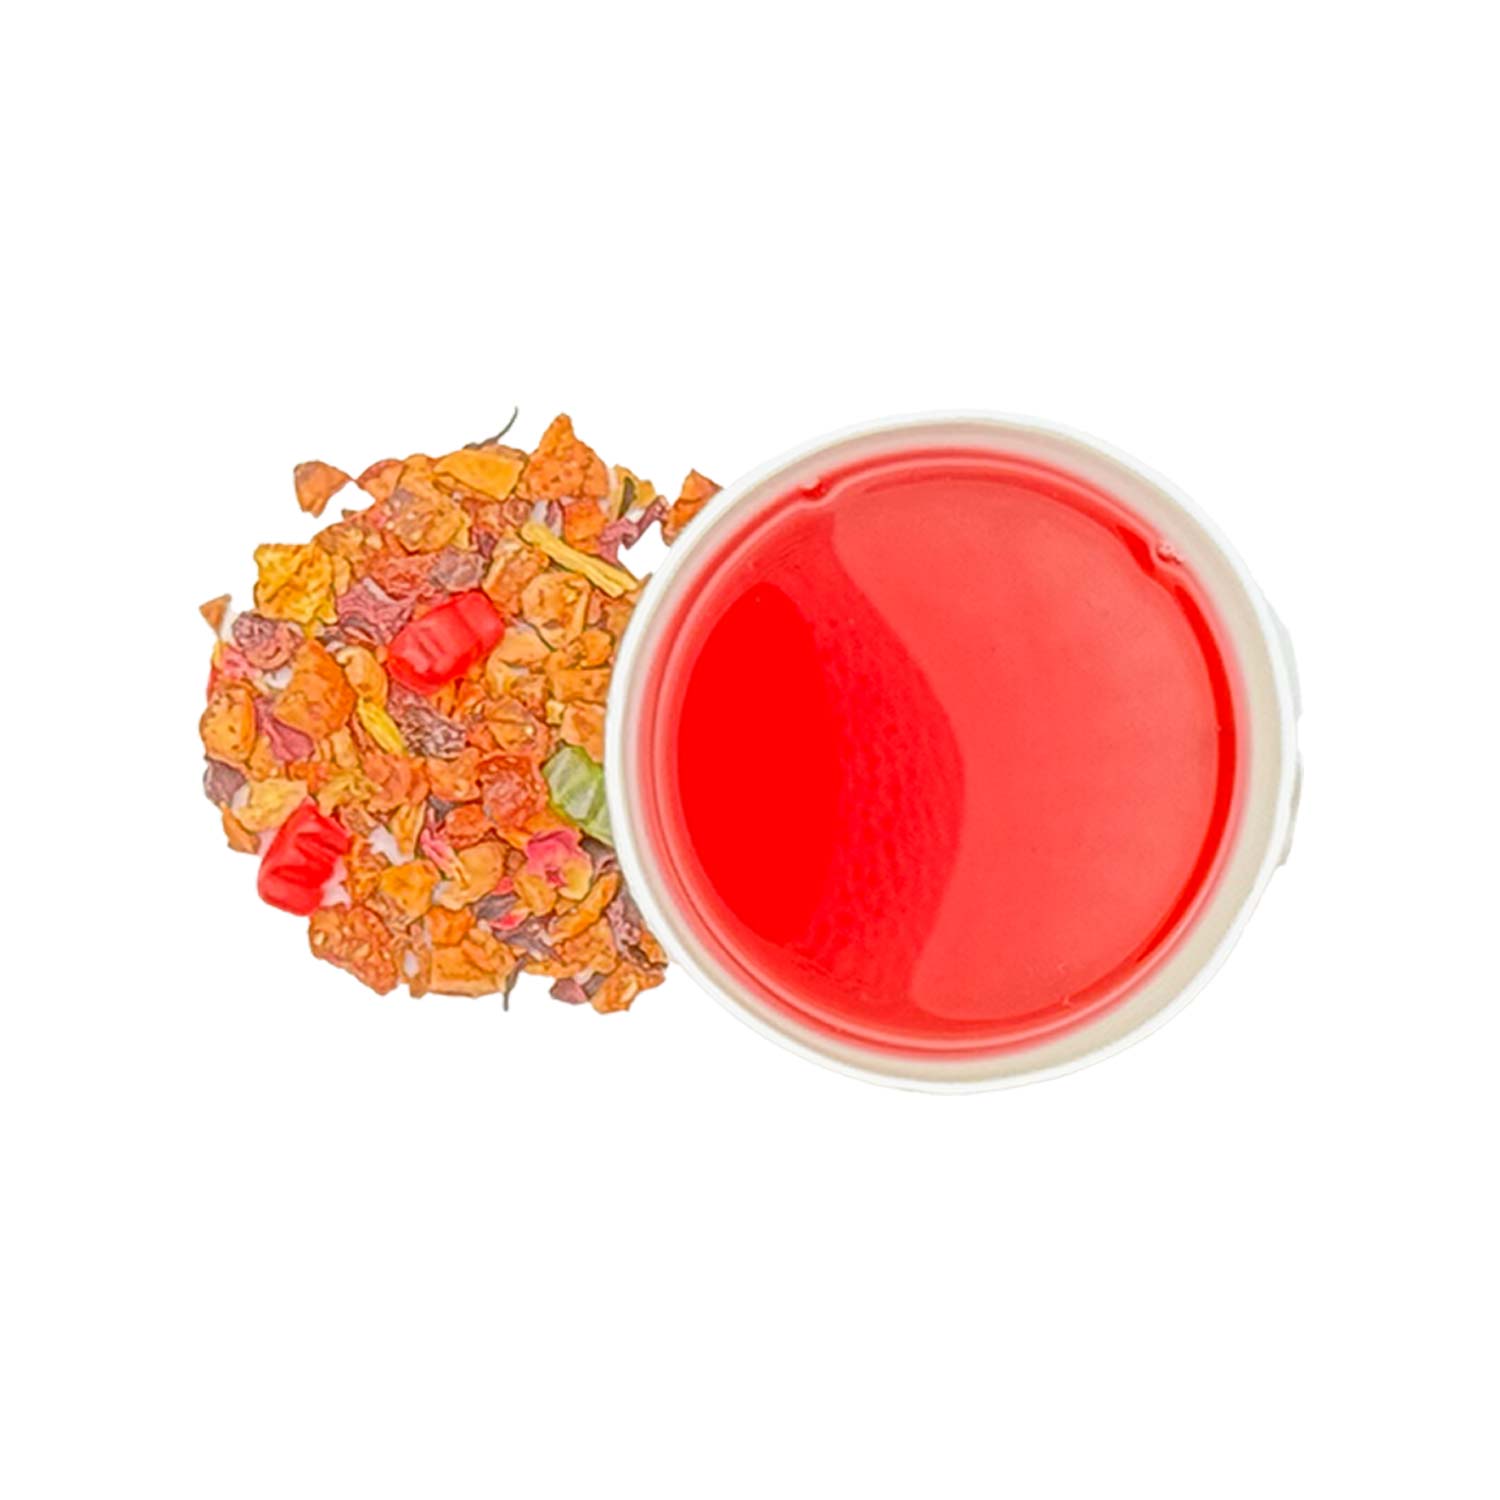 Aromatisierter Früchtetee Hasi-Tee